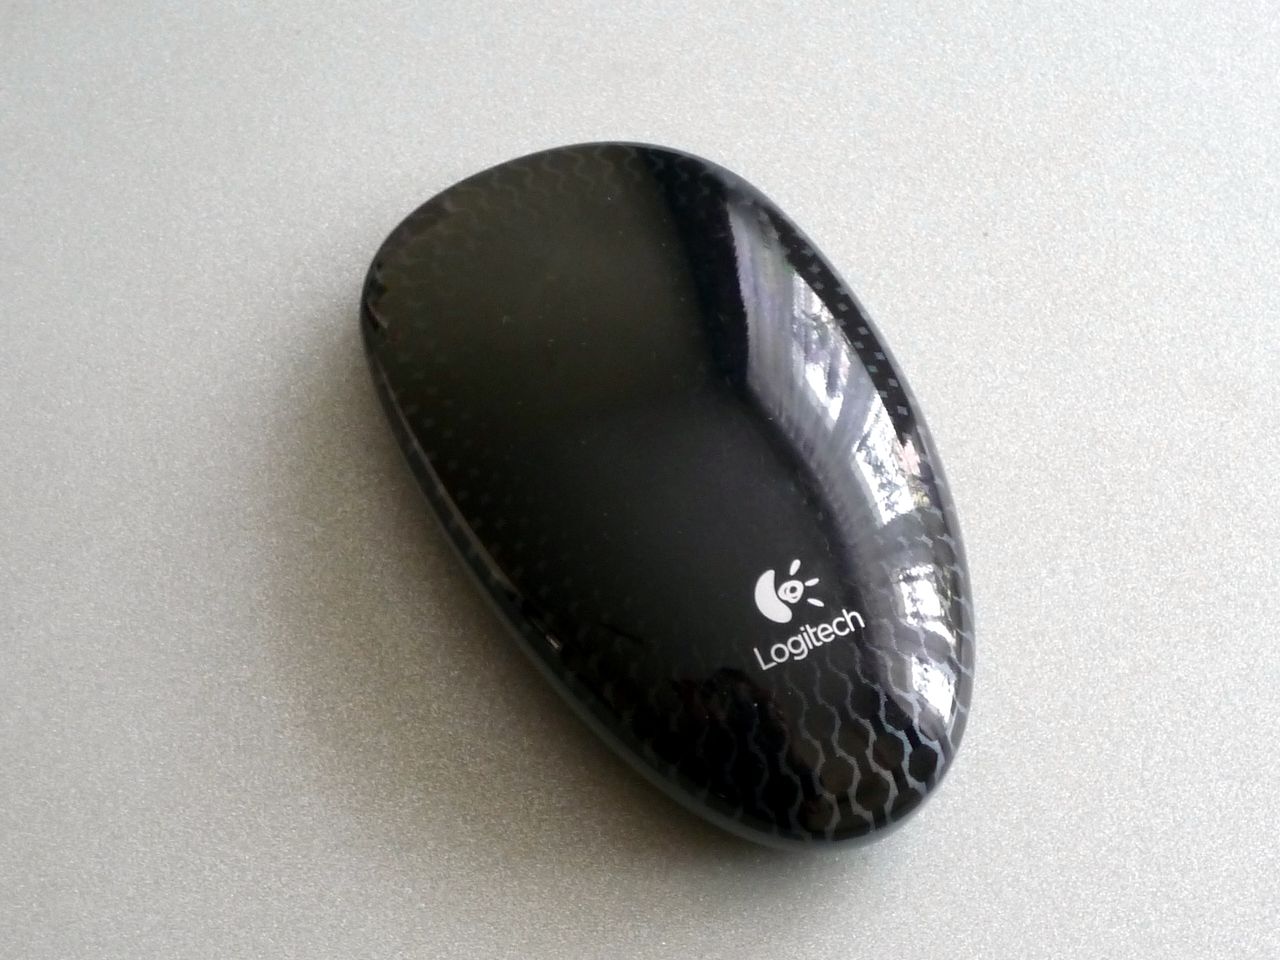 Logitech M600 Touch Mouse